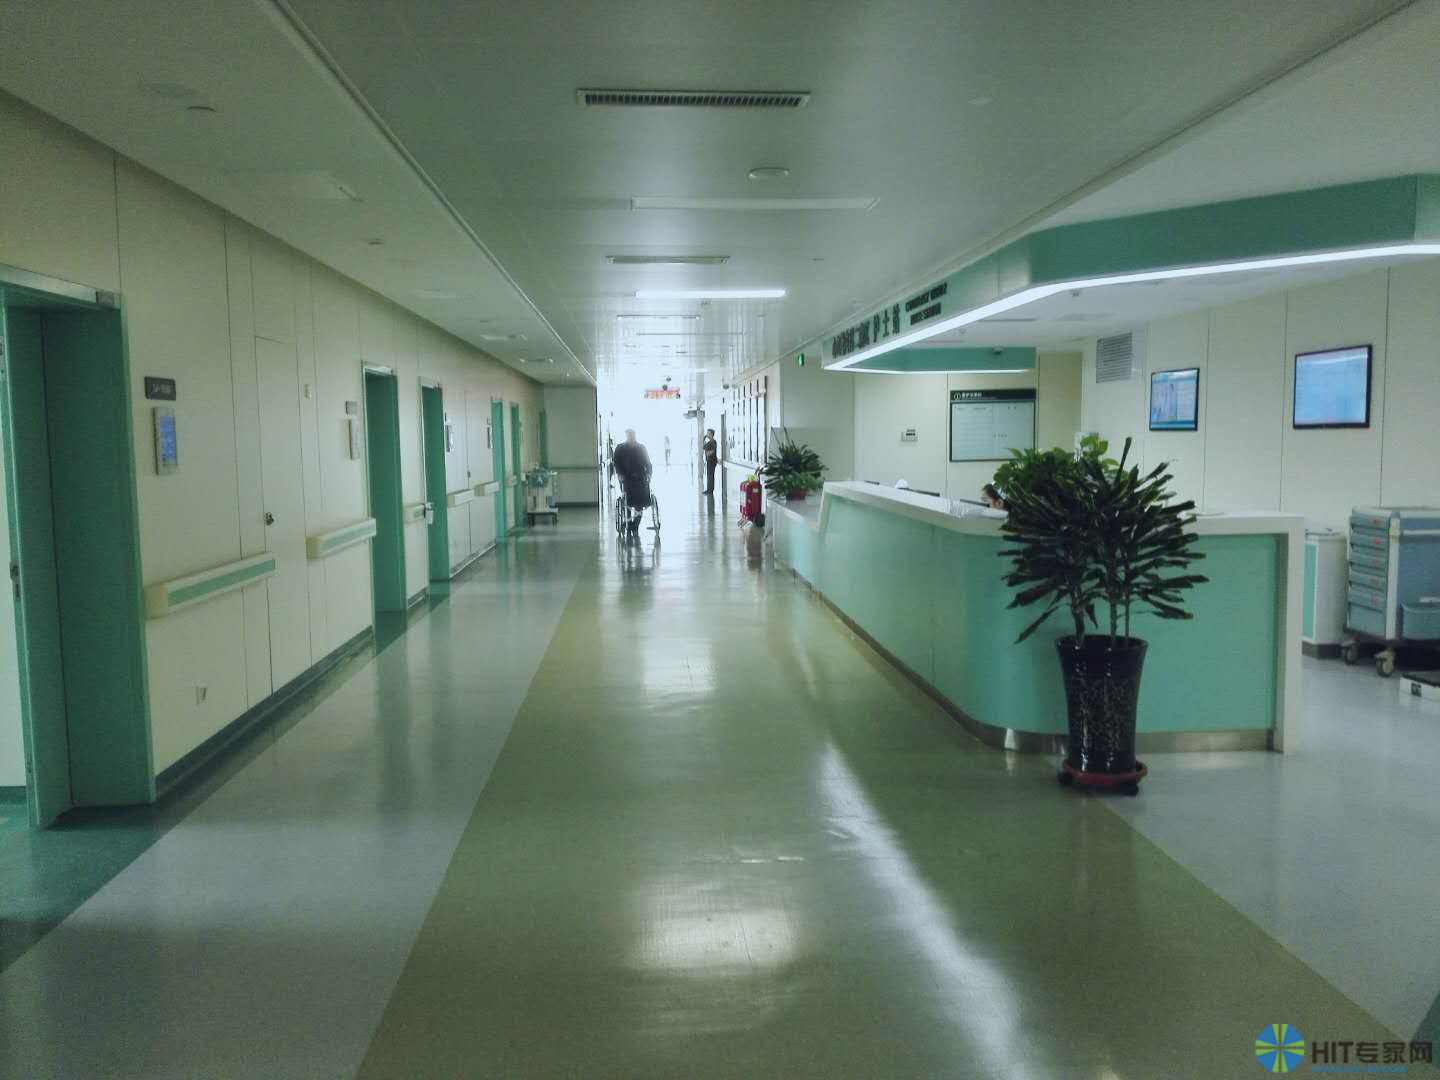 中医院效果图 - 效果图交流区-建E室内设计网